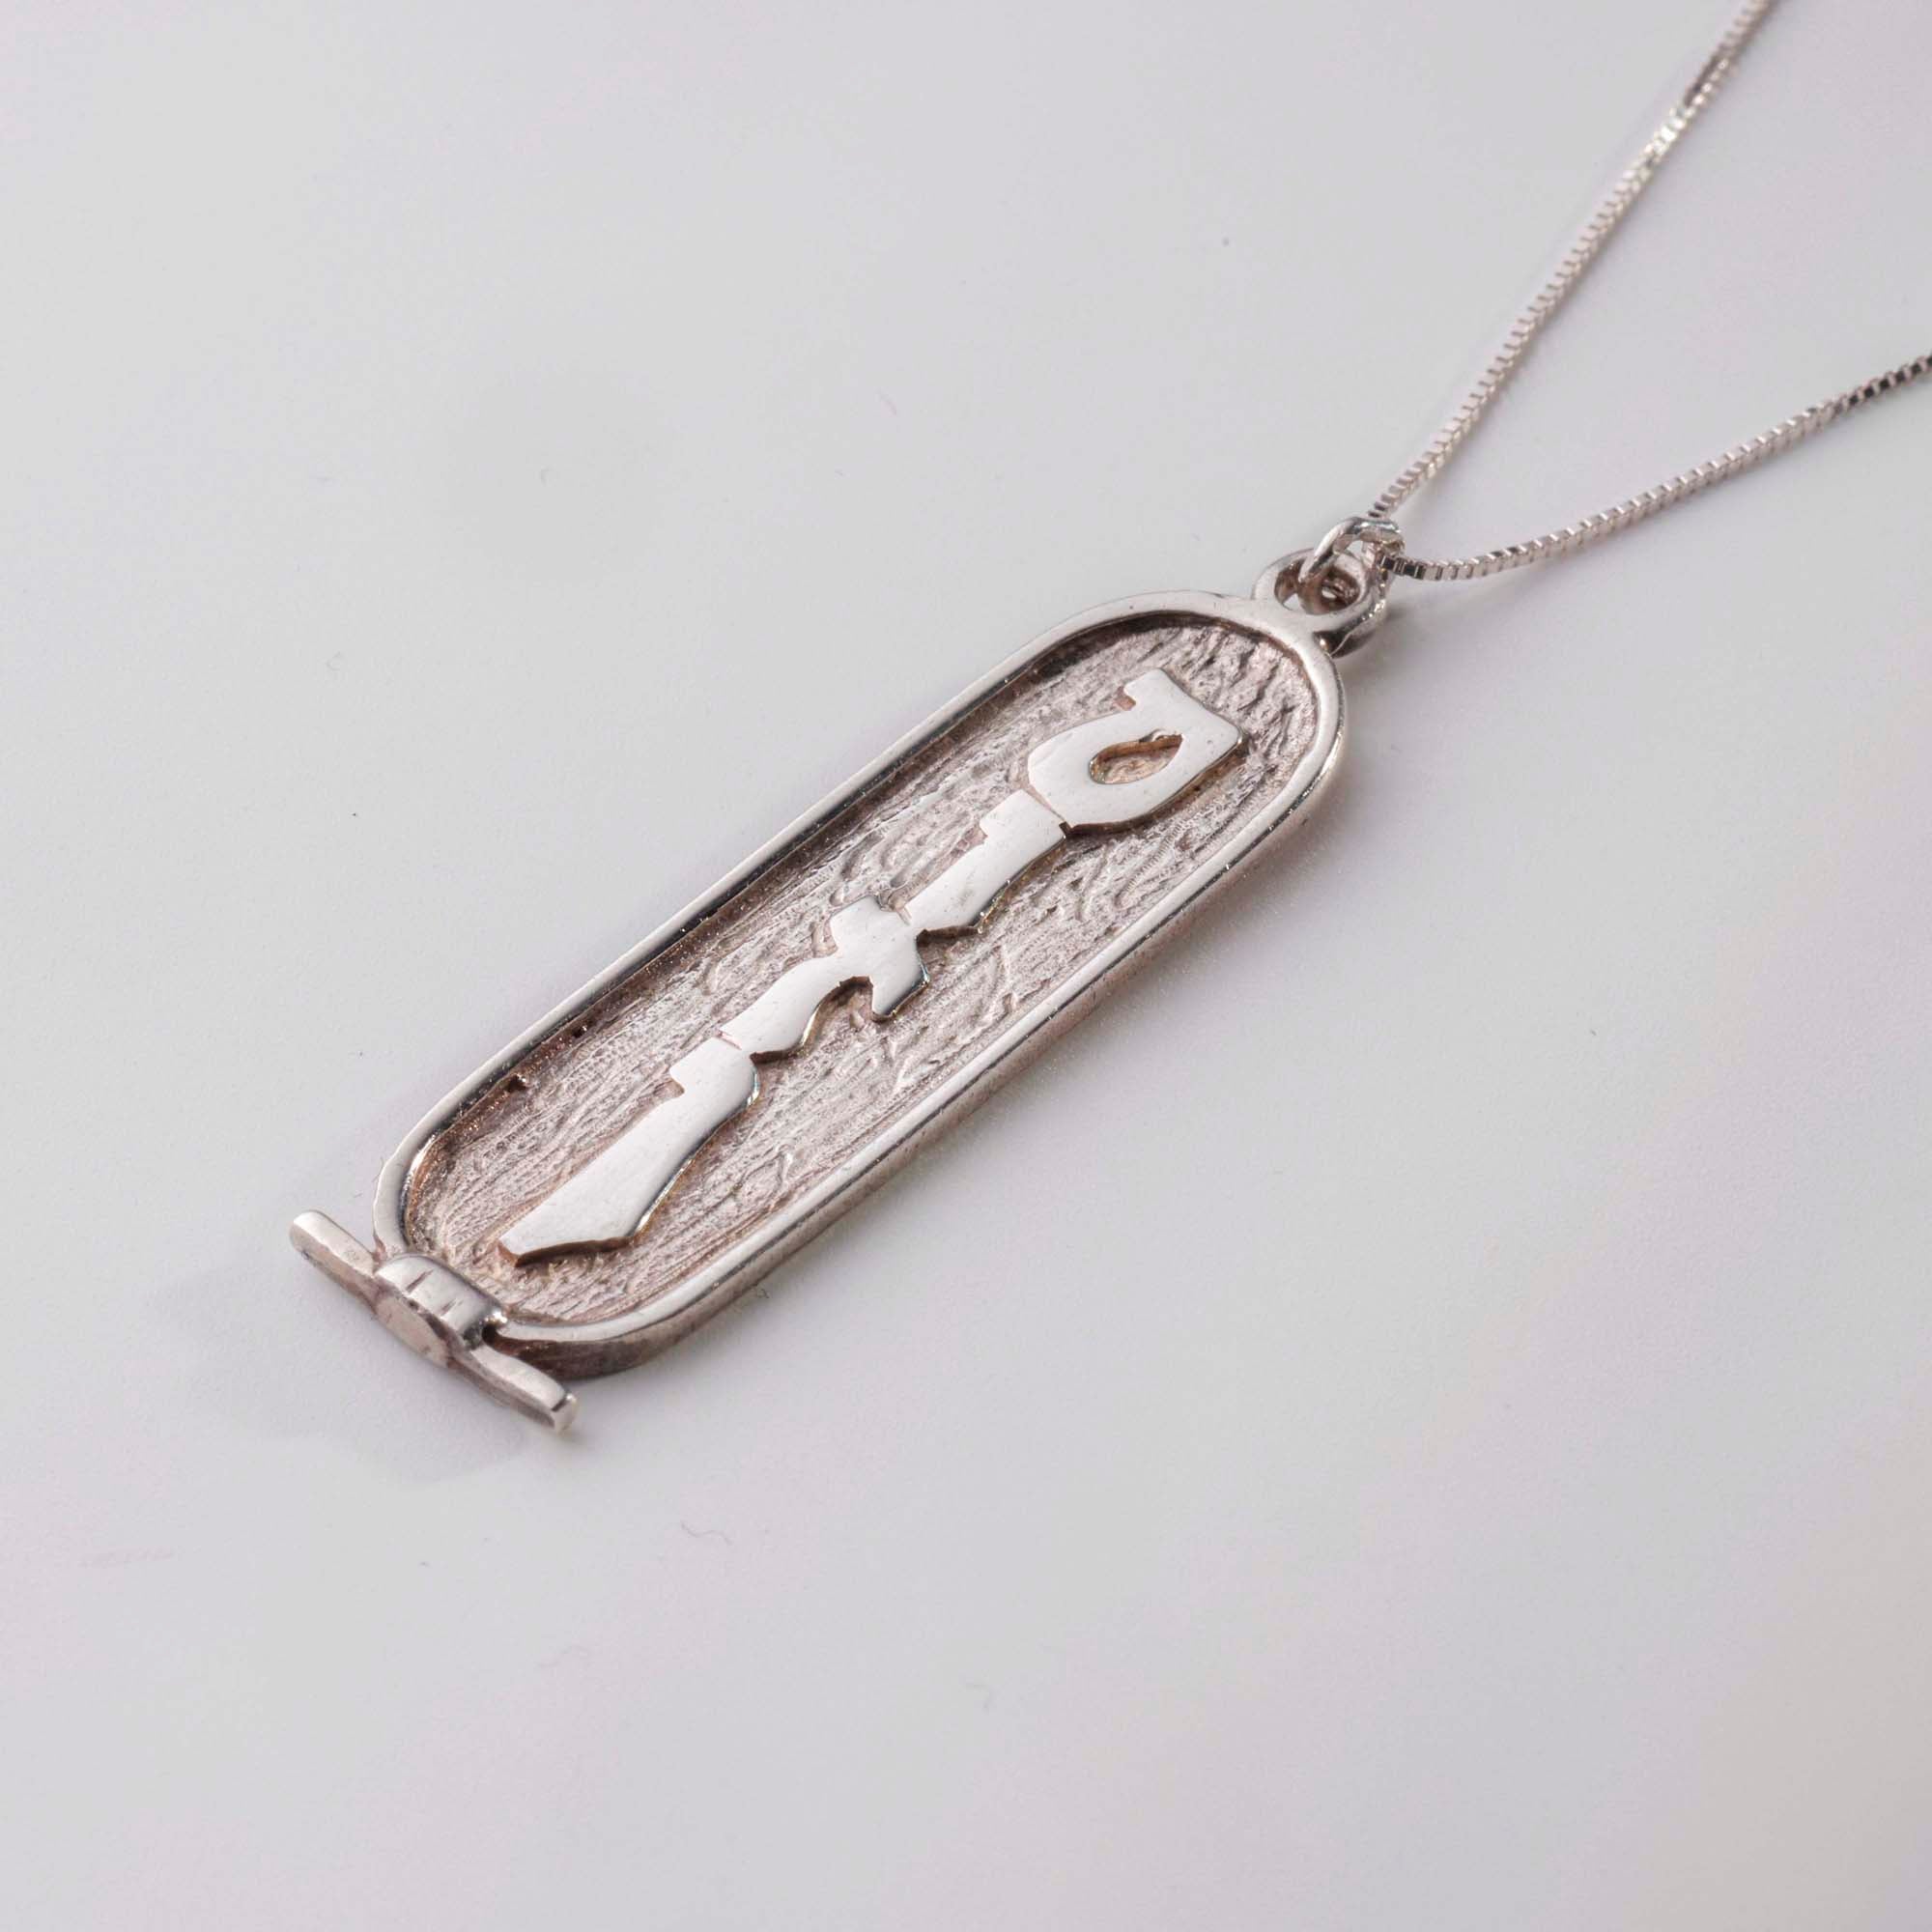 Egyptian Cartouche necklace